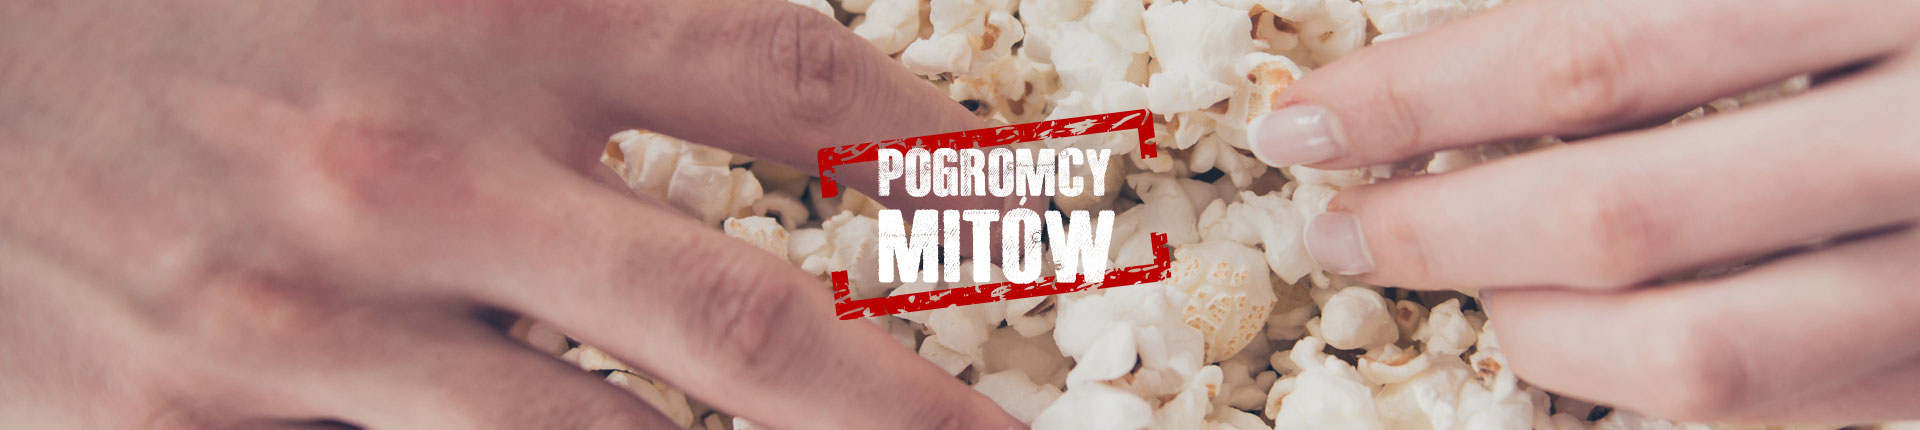 Czy popcorn jest zdrowy, podnosi testosteron i poprawia erekcje?